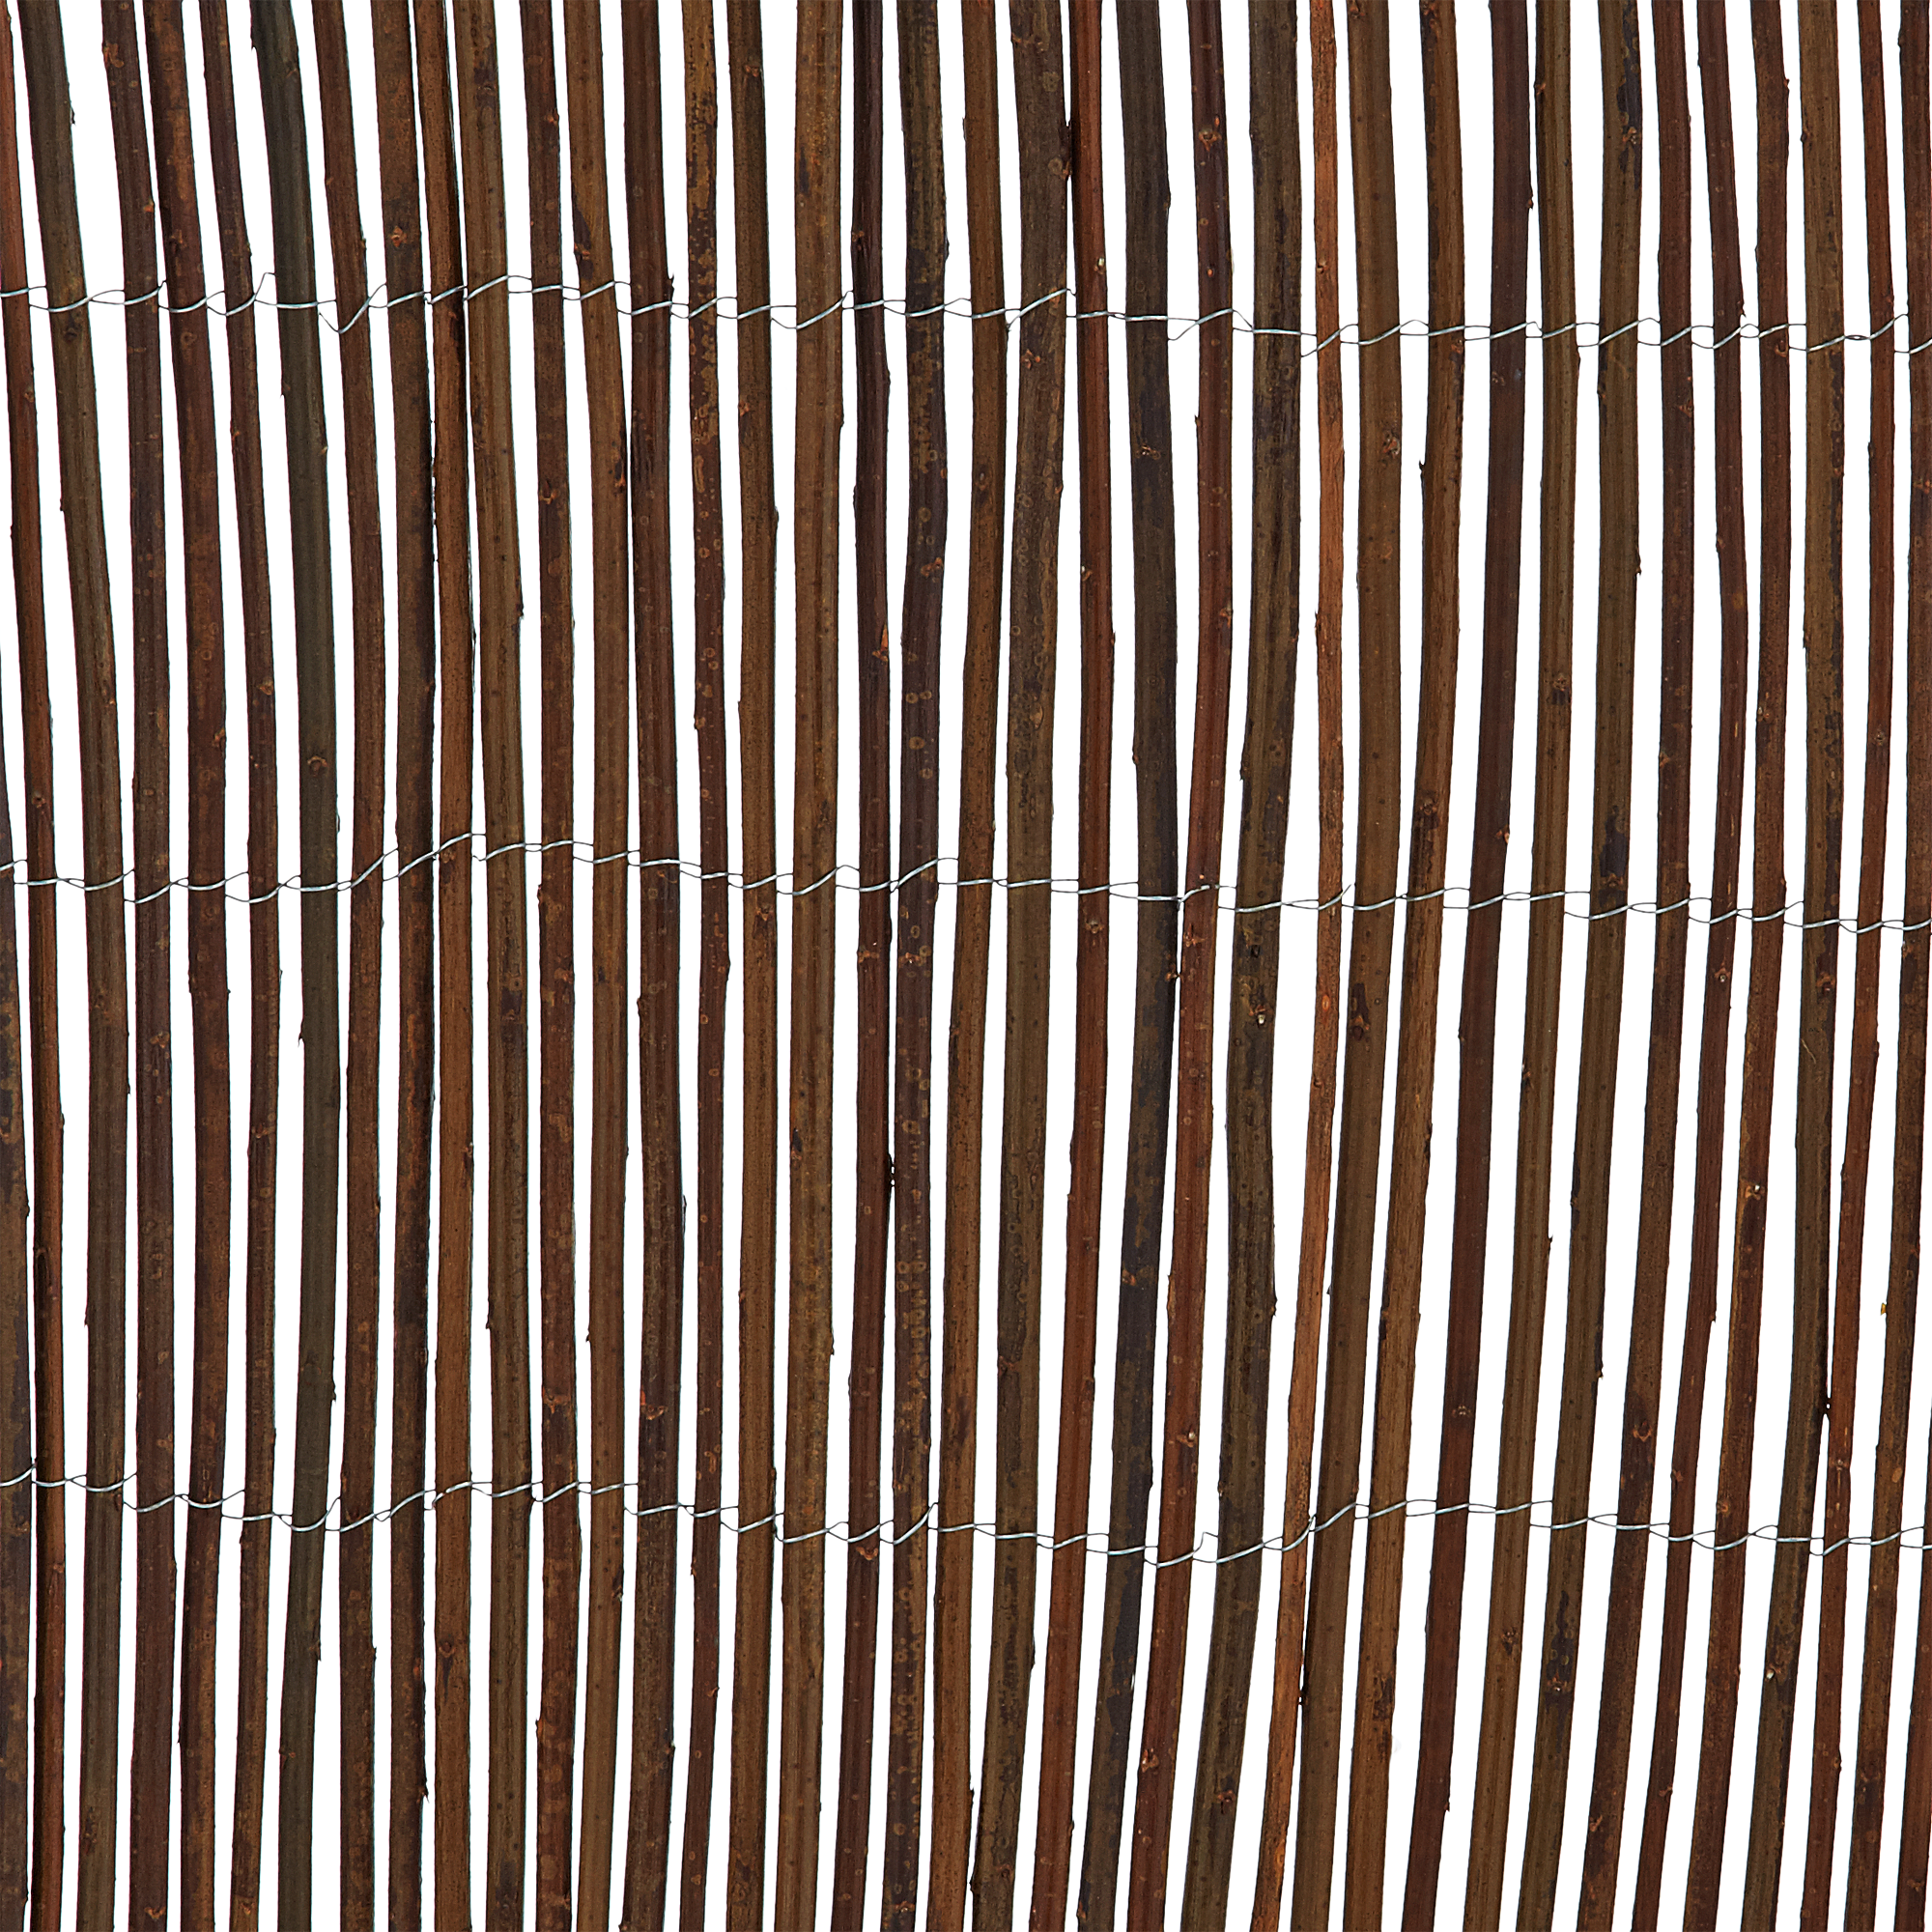 Sichtschutzmatte Weidenholz 300 x 180 cm + product picture